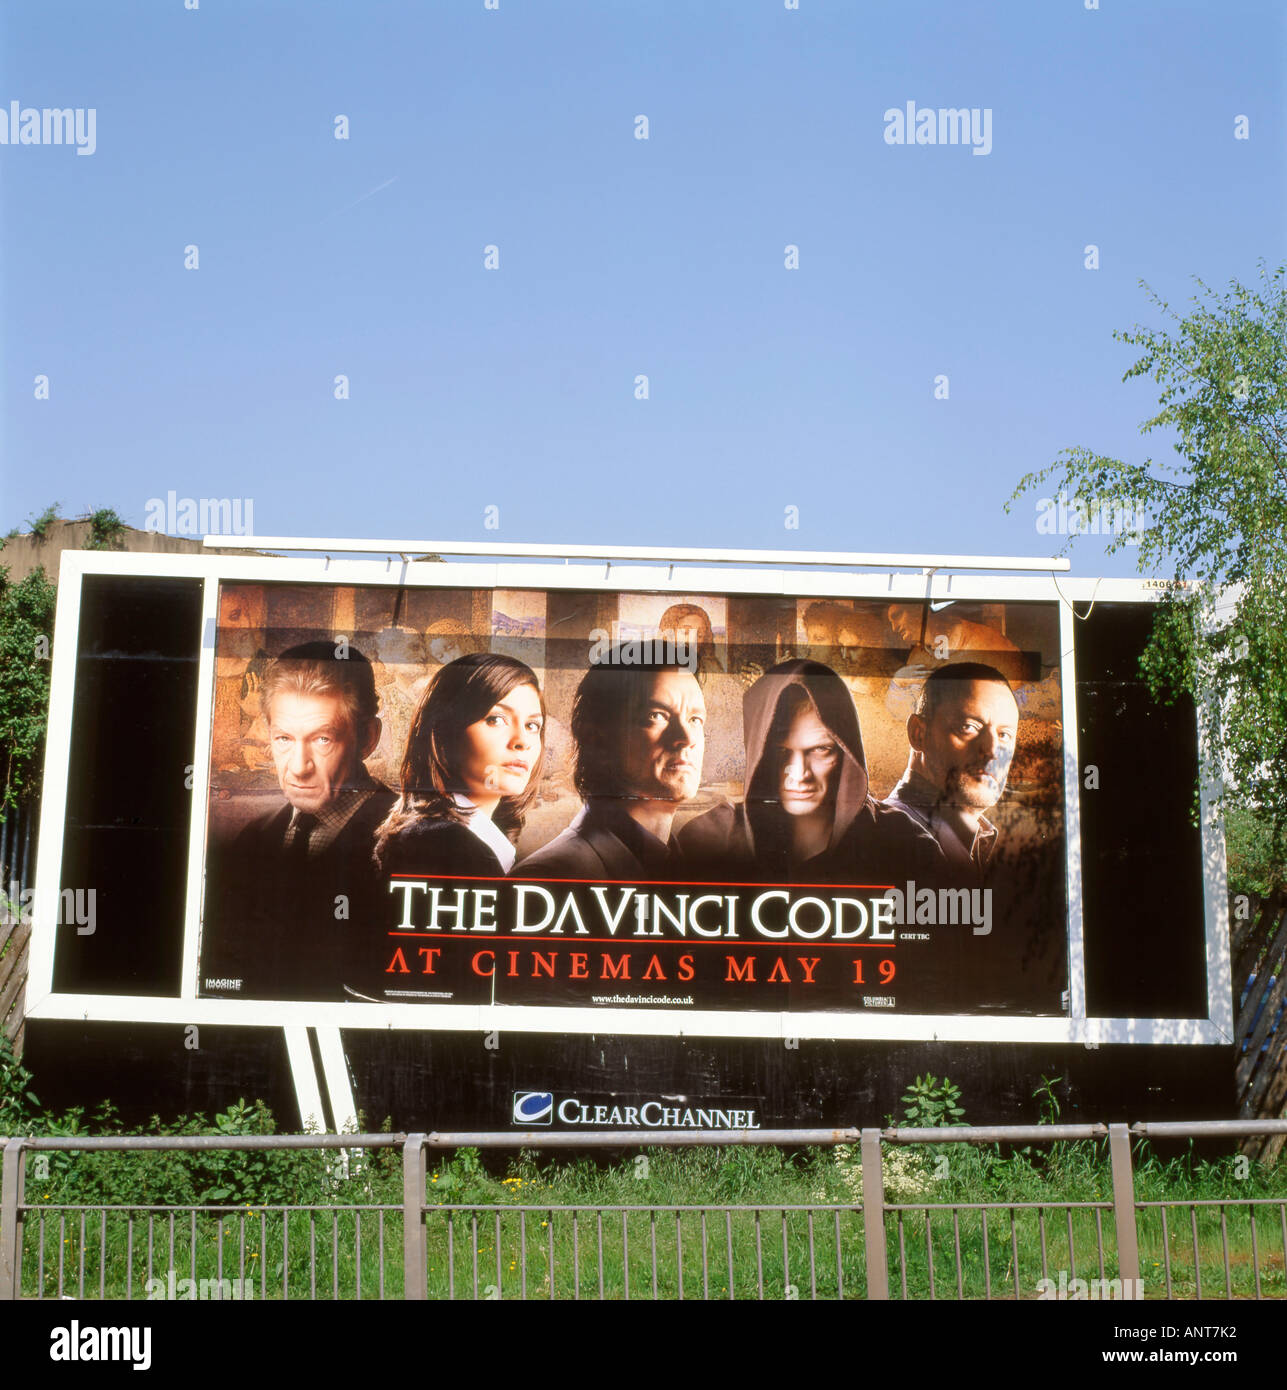 Der Da Vinci Code Film Werbung auf einer Plakatwand in Cardiff Wales Großbritannien UK KATHY DEWITT Stockfoto